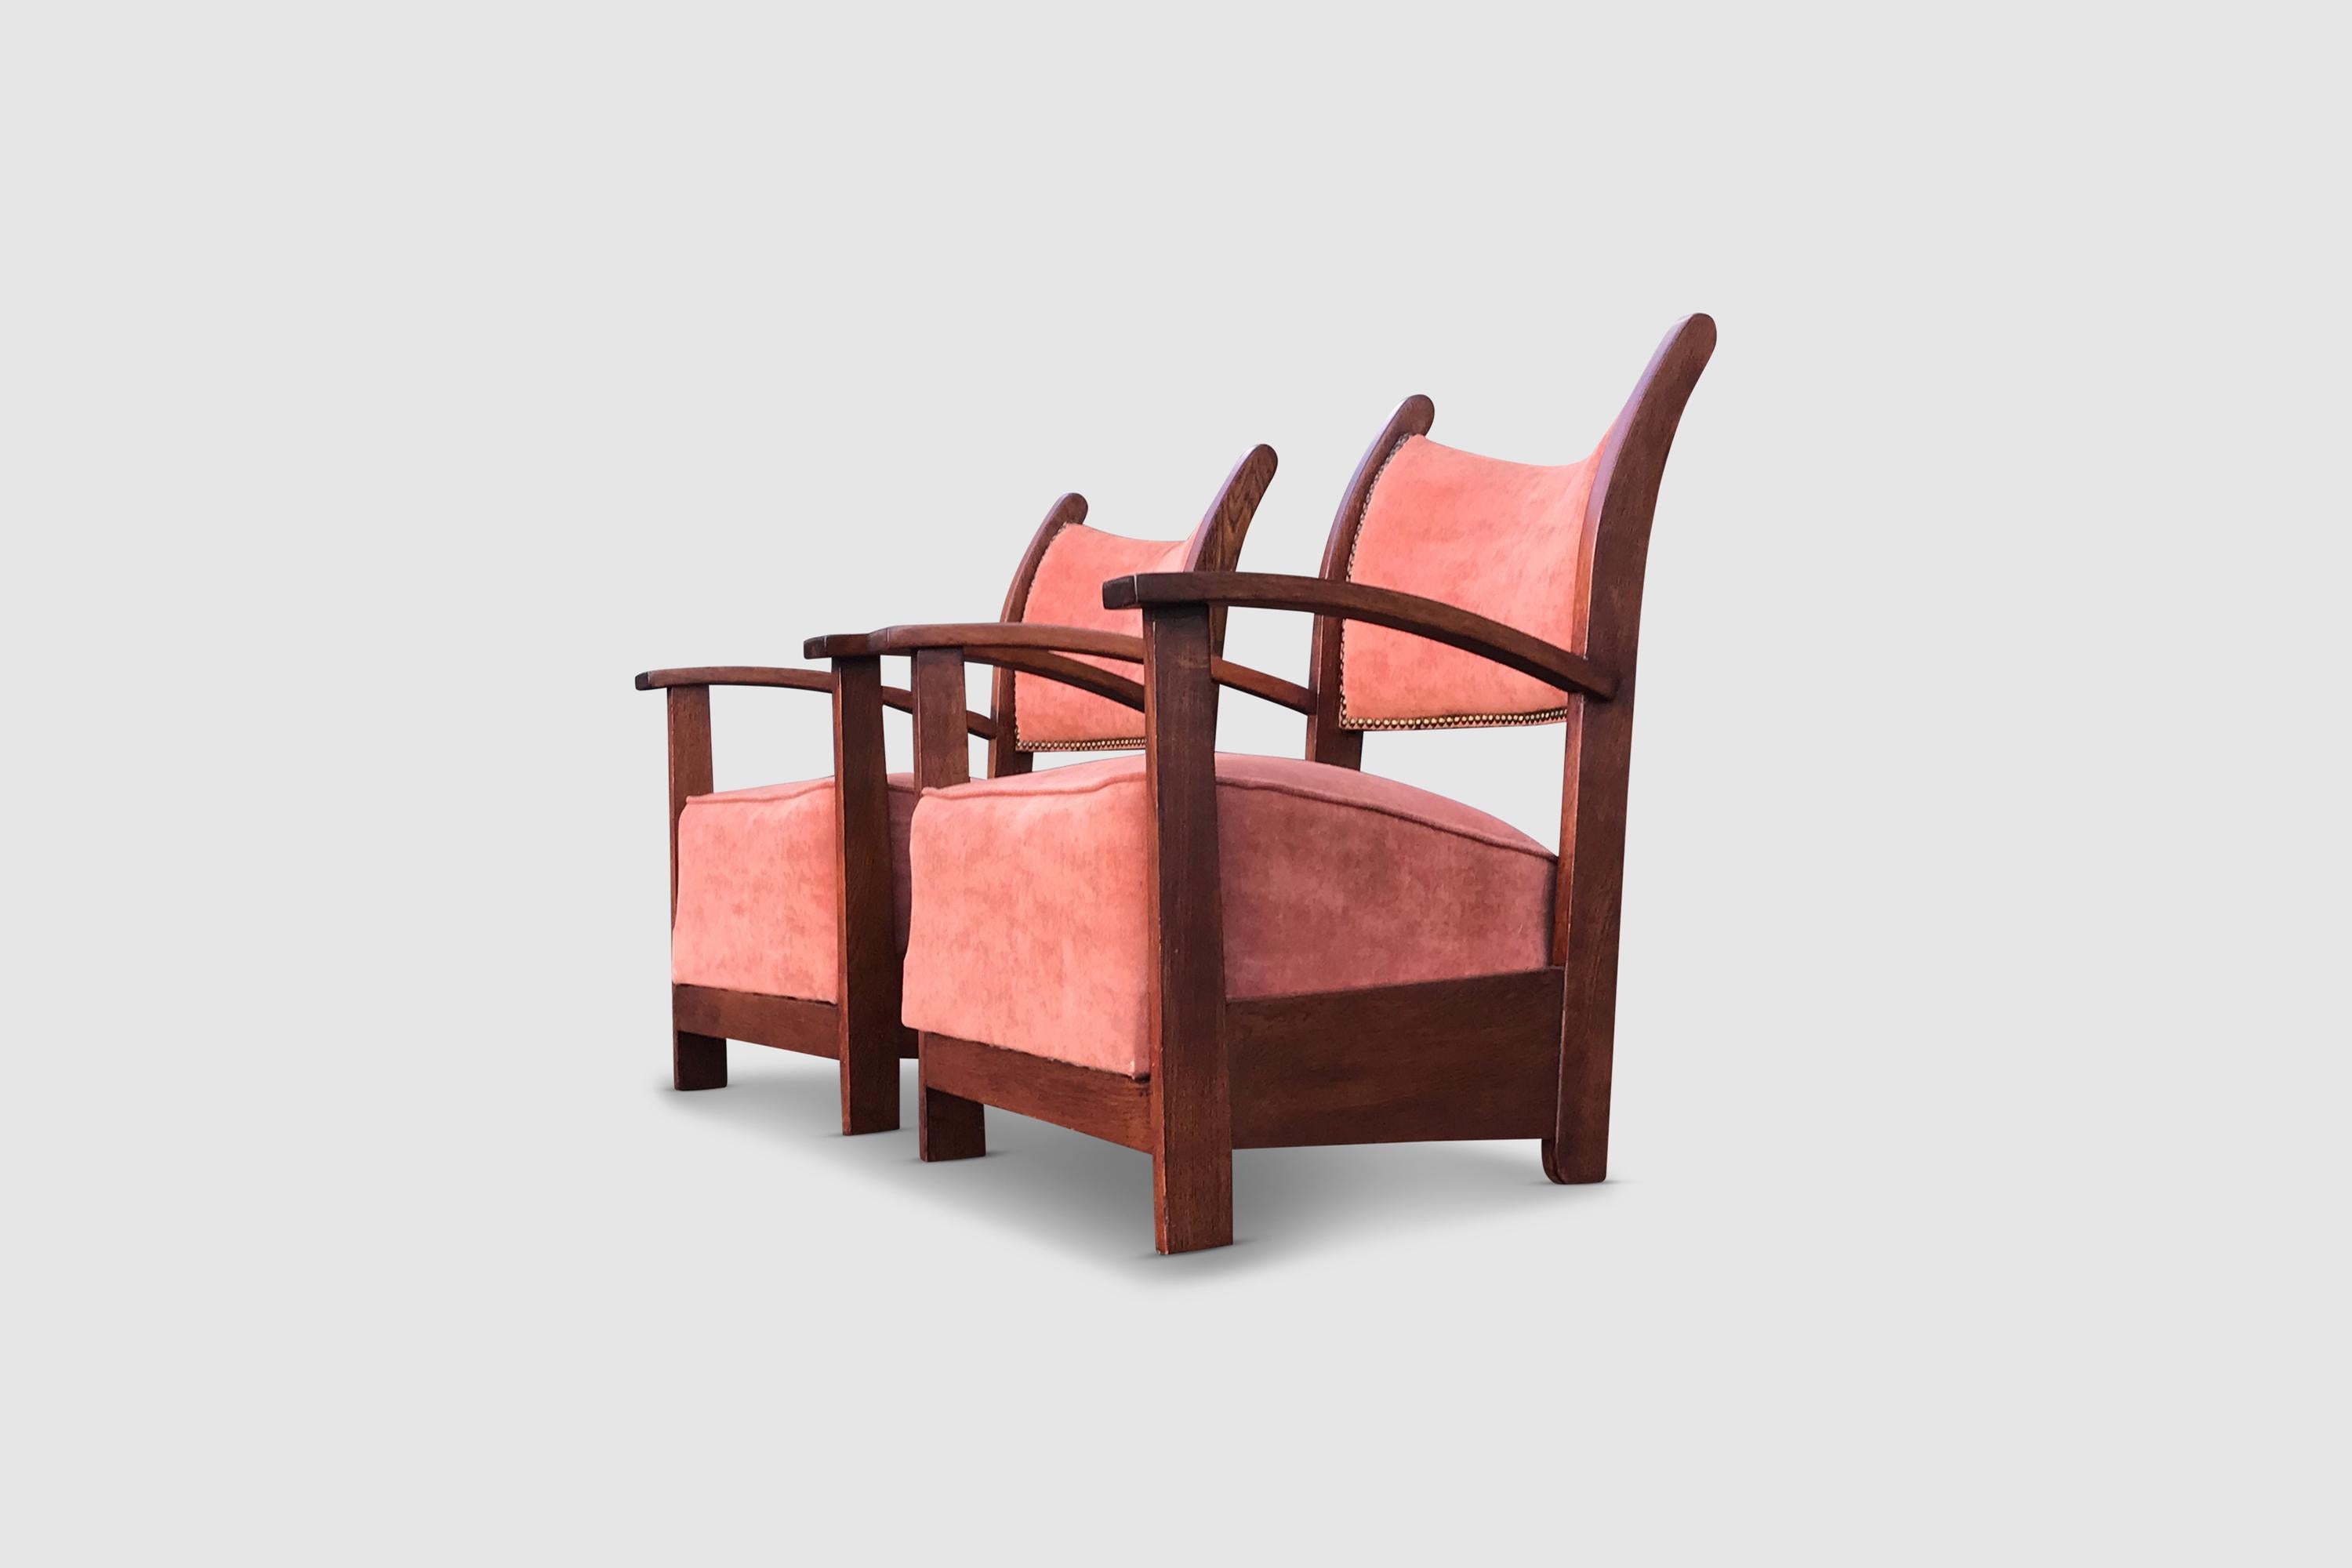 Sehr cooles Set von niedrigen Sesseln in der Art der Amsterdamer Schule aus der Art-Deco-Zeit. Wahrscheinlich aus den 1930er oder 1940er Jahren.

Der Rahmen aus Eichenholz ist in einer ganz besonderen Form nach hinten gebogen und sorgt für eine